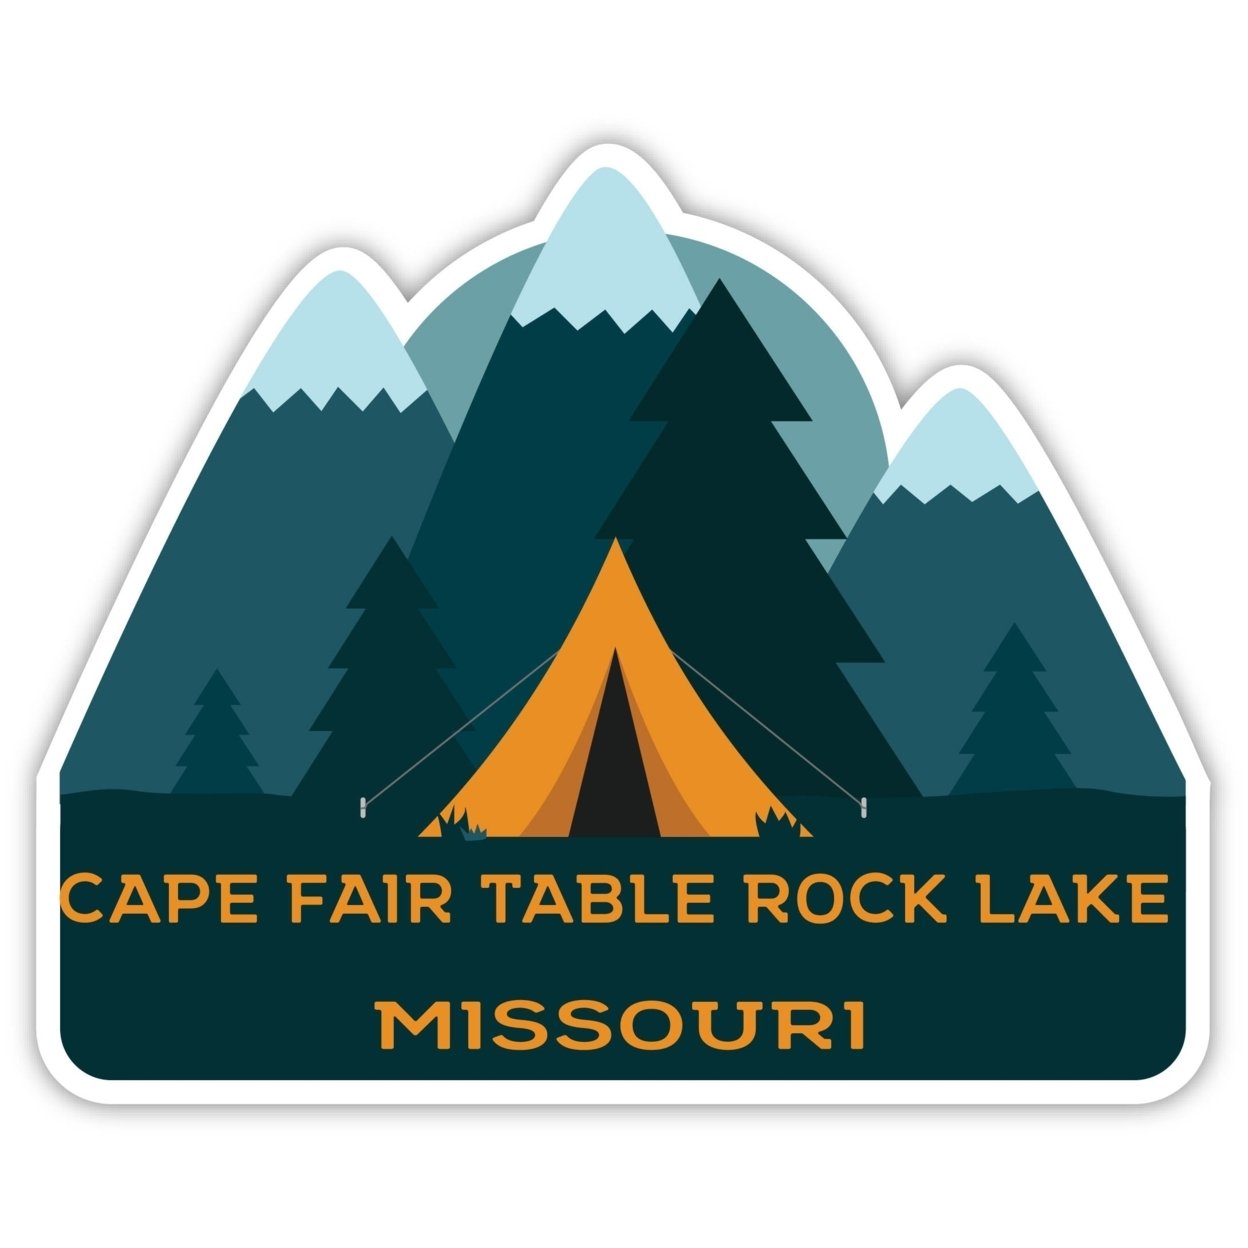 Cape Fair Table Rock Lake Missouri Souvenir Decorative Stickers (Choose Theme And Size) - Single Unit, 2-Inch, Tent